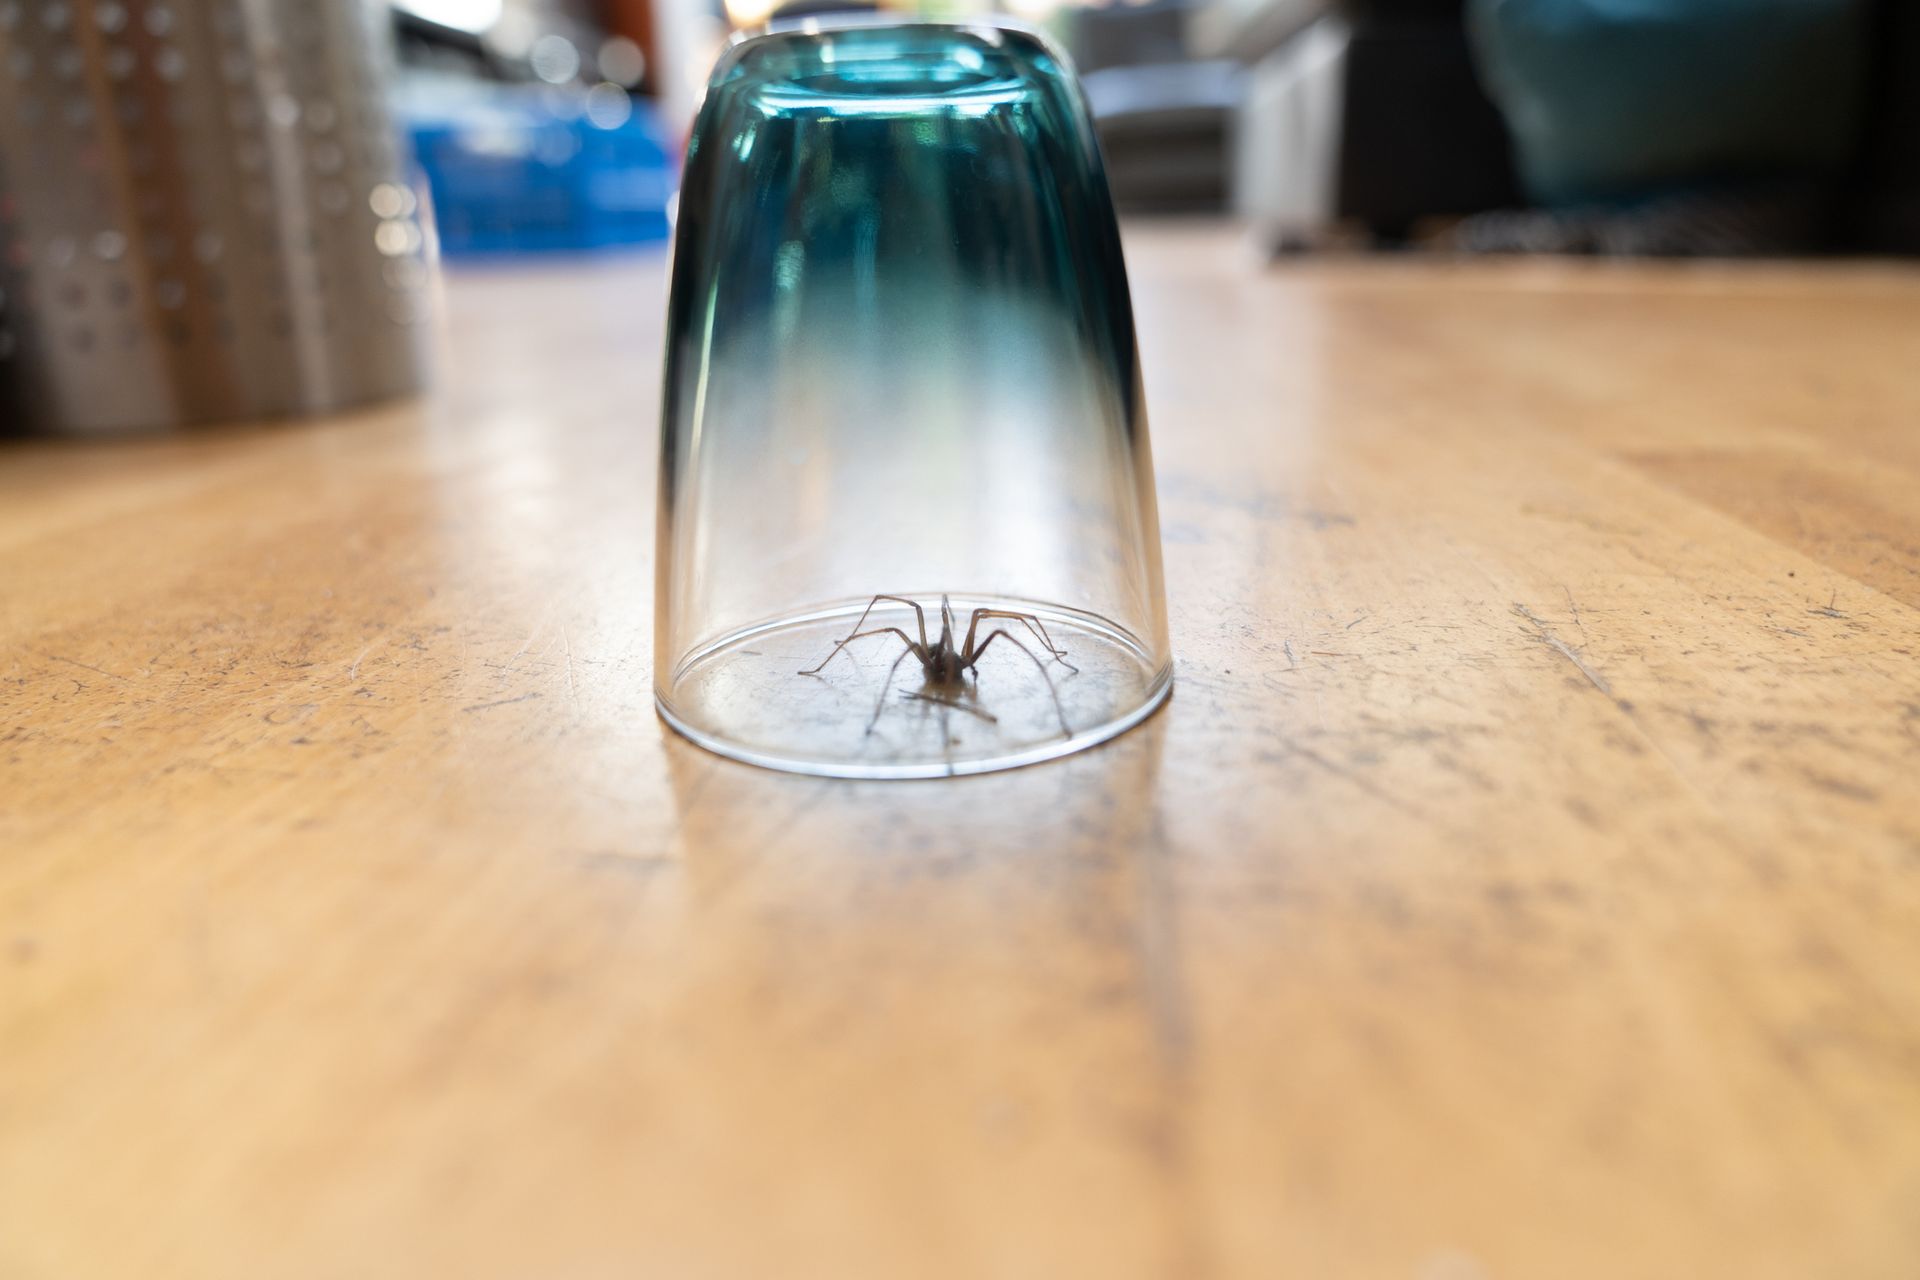 spider stuck in jar